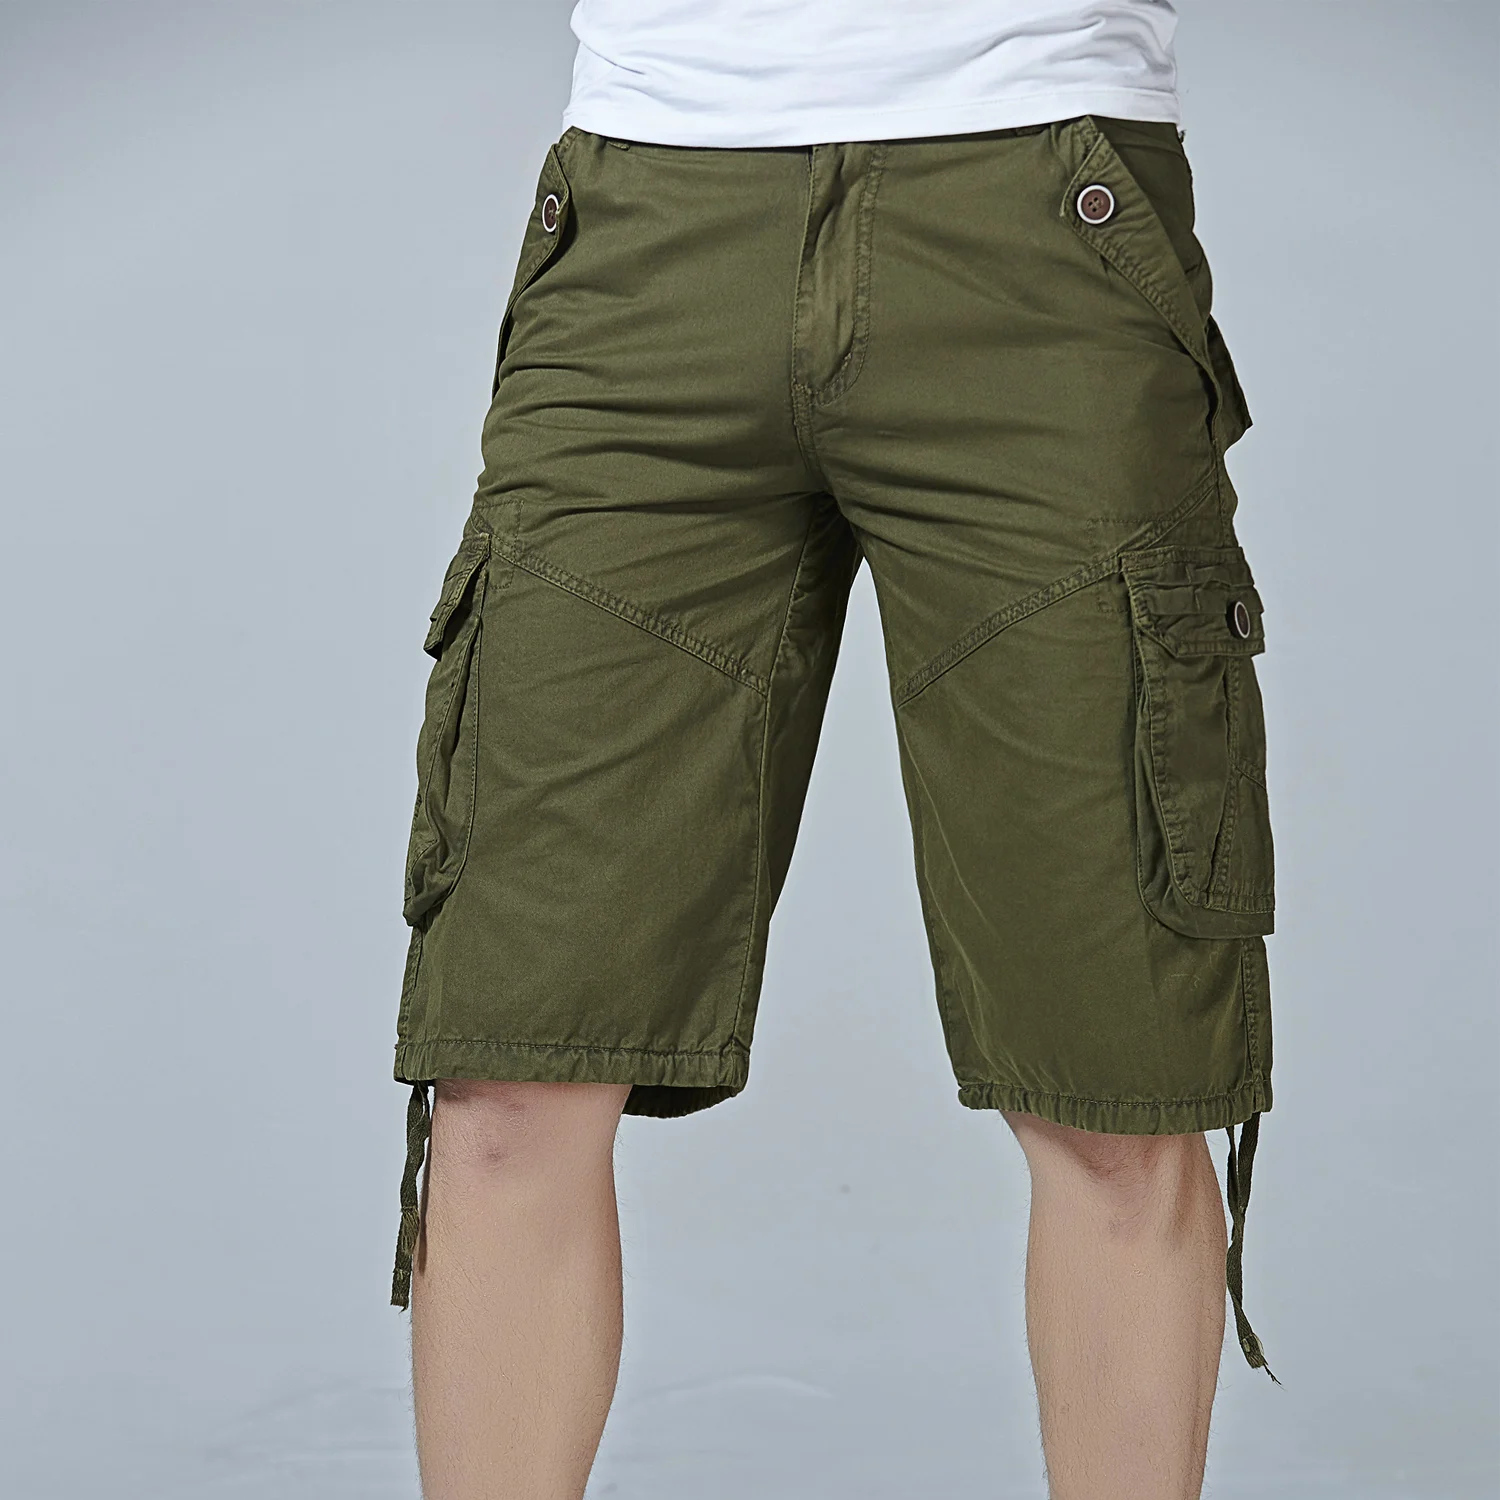 Мужские шорты Карго крутой камуфляж Лето Горячая Распродажа хлопок повседневные мужские короткие штаны Удобная брендовая одежда камуфляж